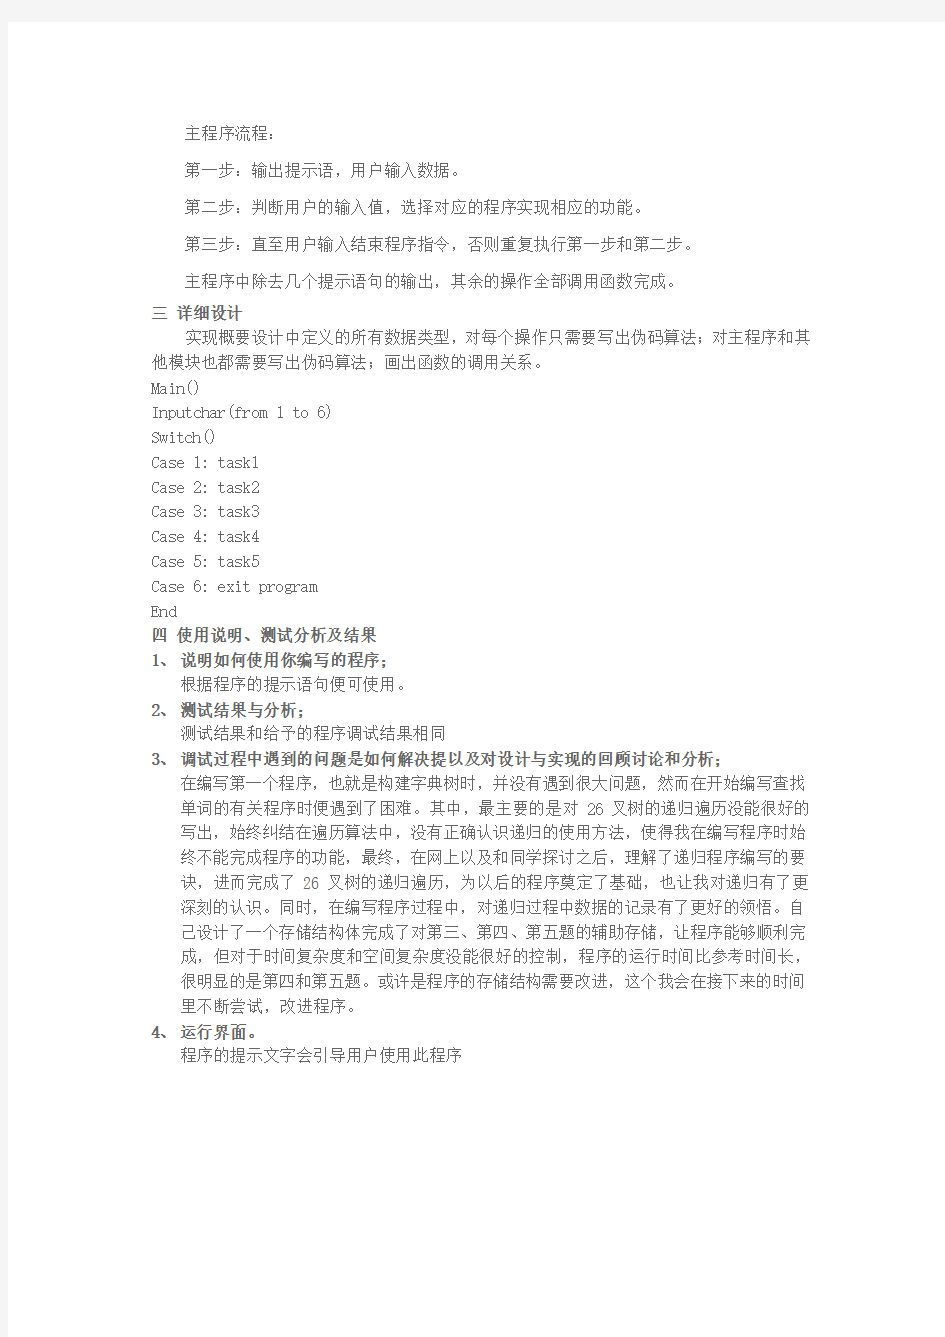 数据结构大作业实验报告2010302521 刘恋